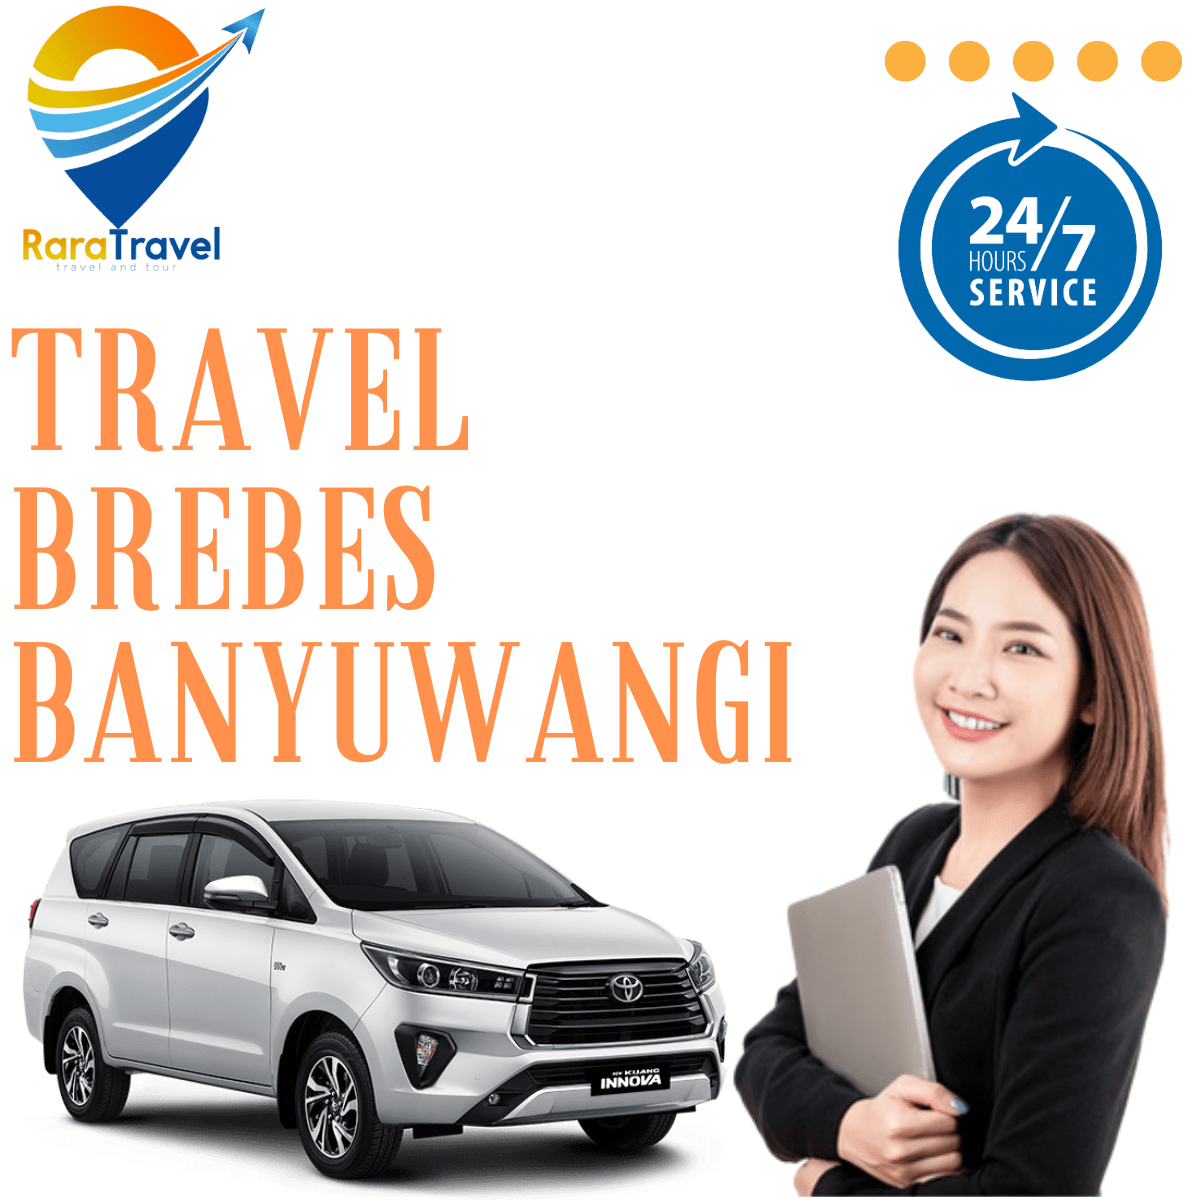 Travel Brebes Banyuwangi - RARATRAVEL.ID